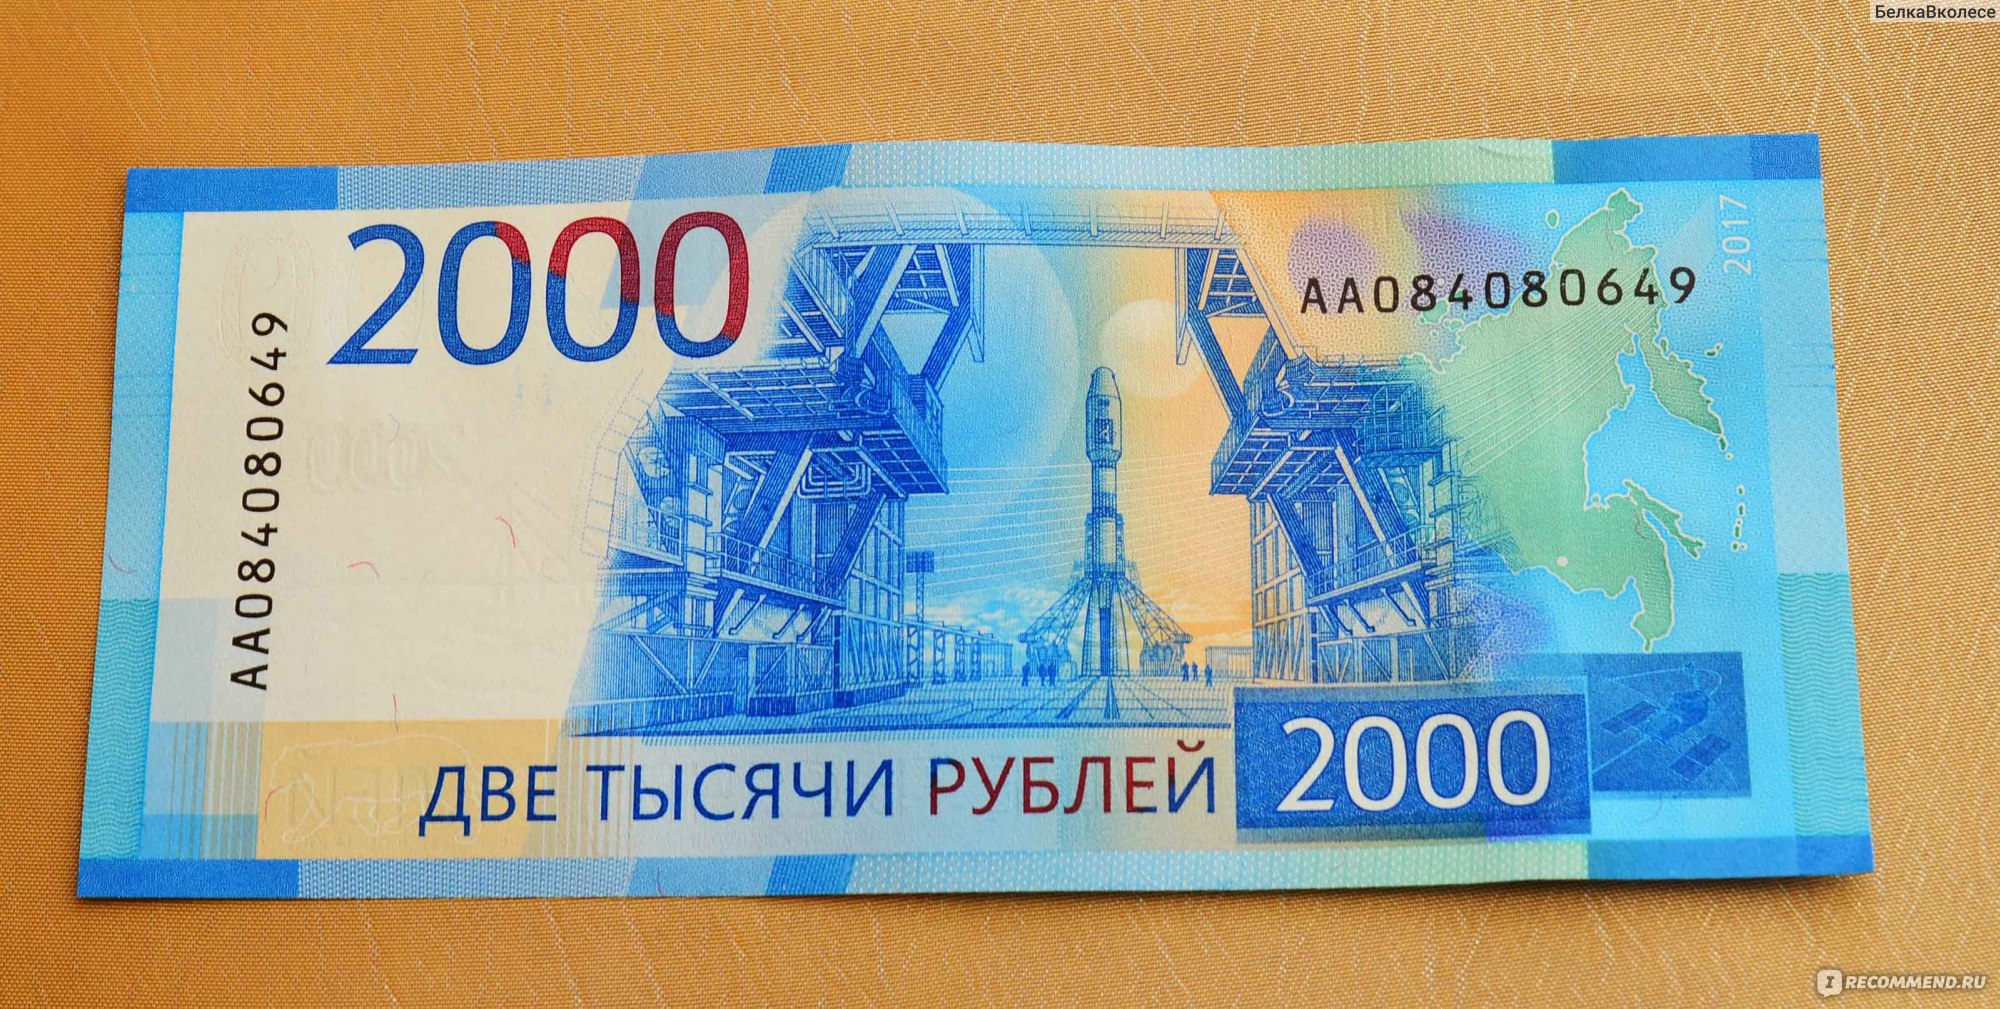 Жизнь на 2 тысячи. Купюра 2000 рублей. Банкнота 200 и 2000 рублей. 2000 Рублей бумажка. 200 Рублей и 2000 рублей.